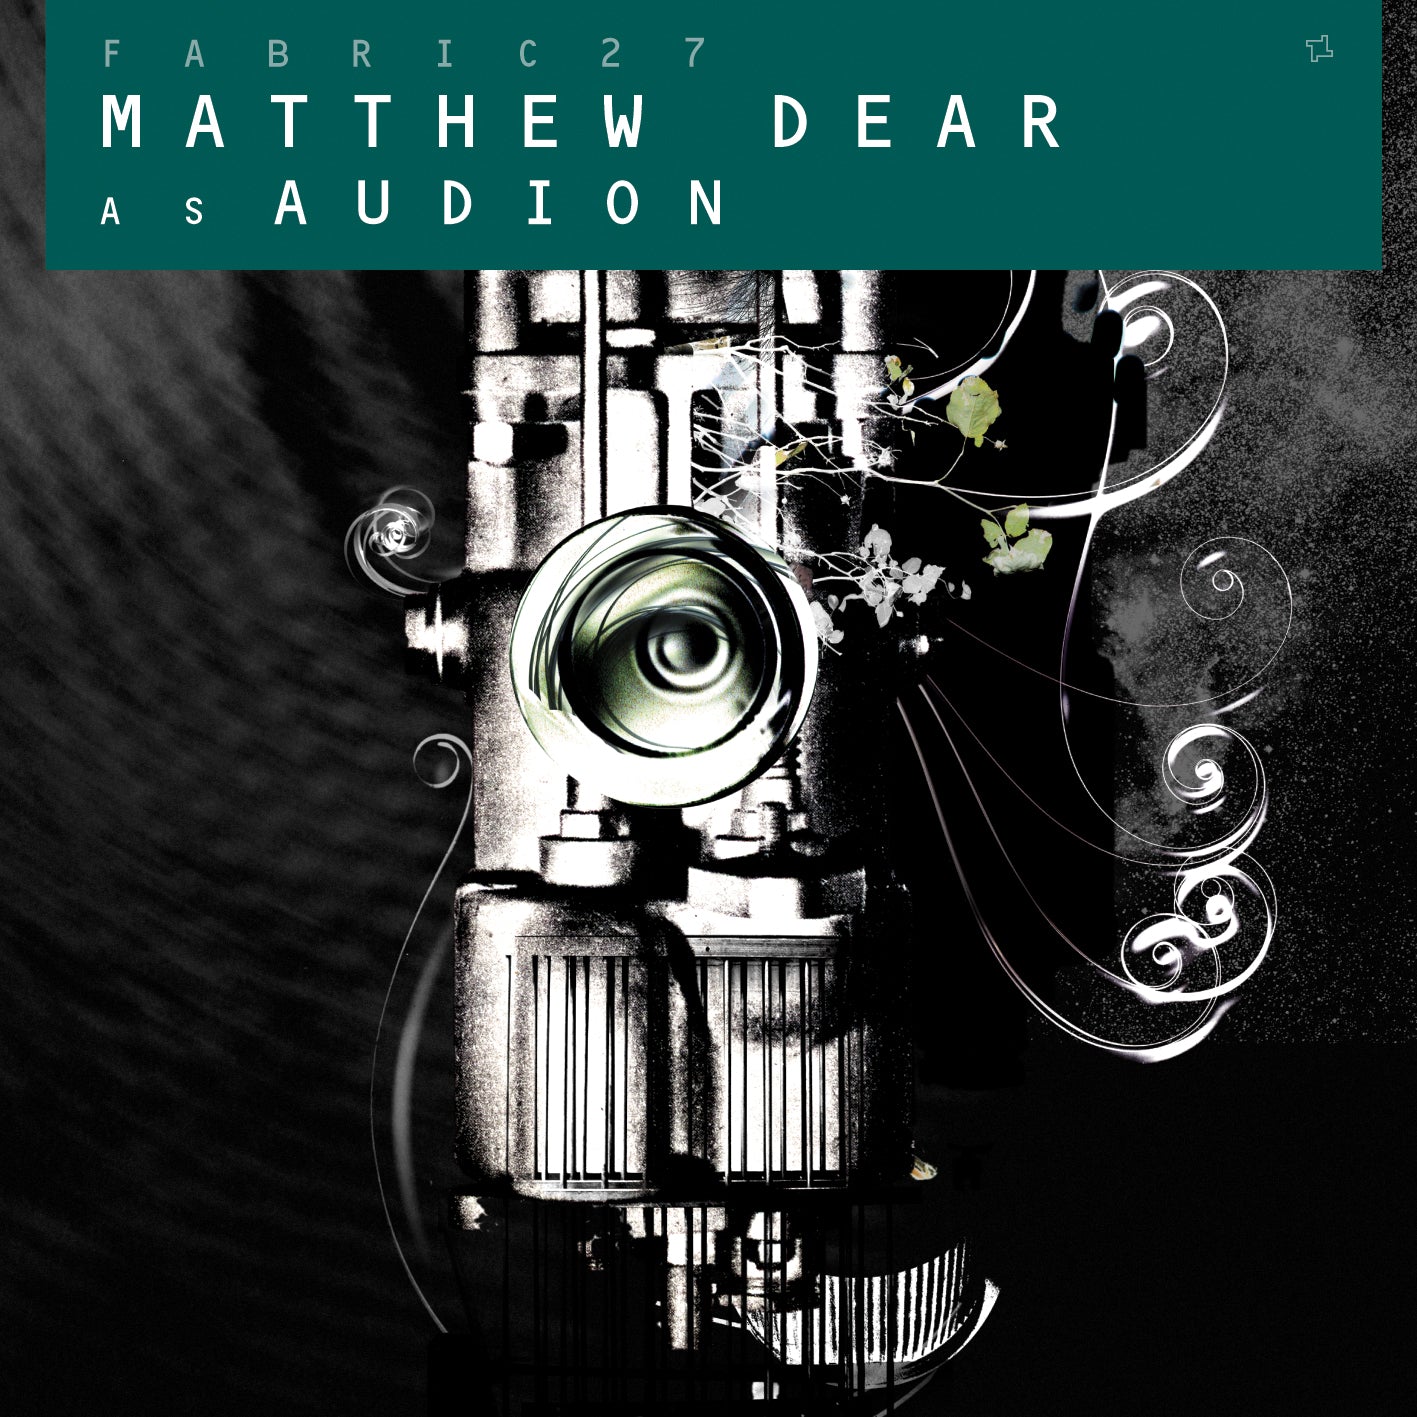 Matthew Dear as Audion - fabric 27 CD